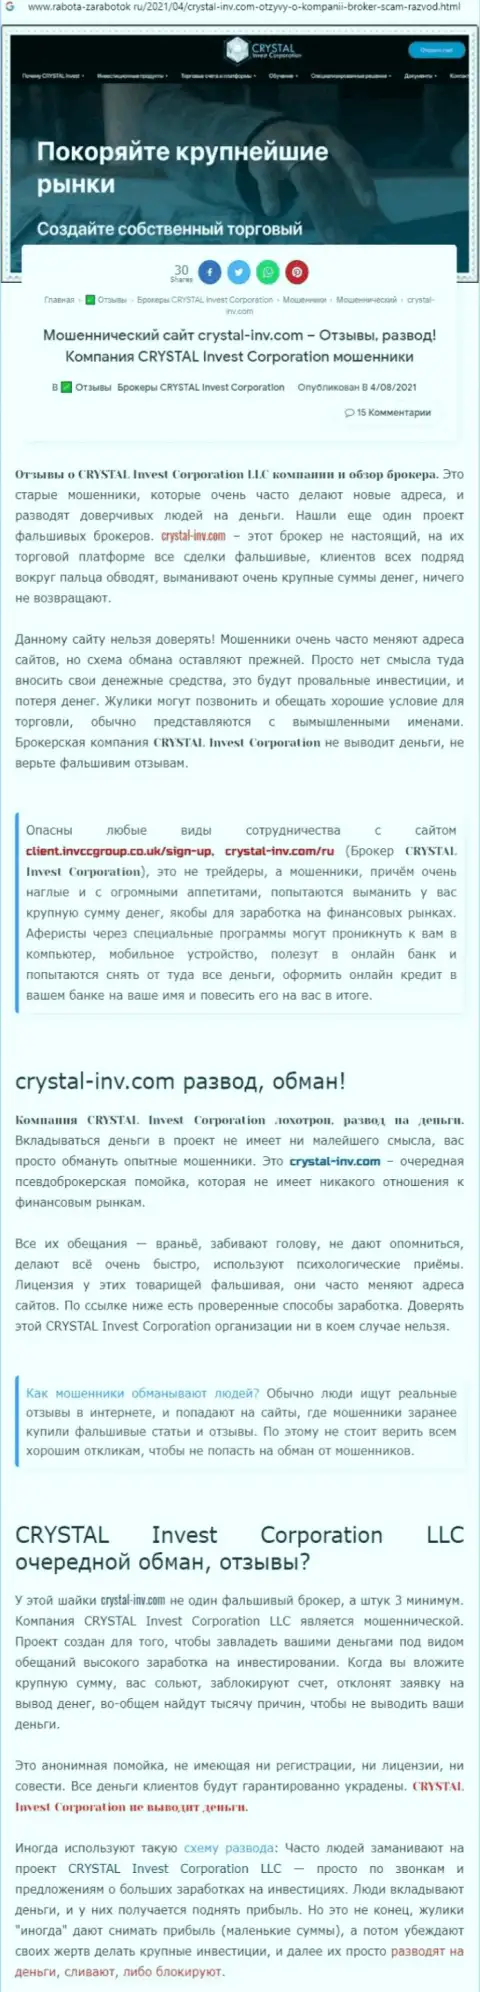 Материал, разоблачающий компанию CrystalInv, который взят с сайта с обзорами мошеннических уловок разных компаний